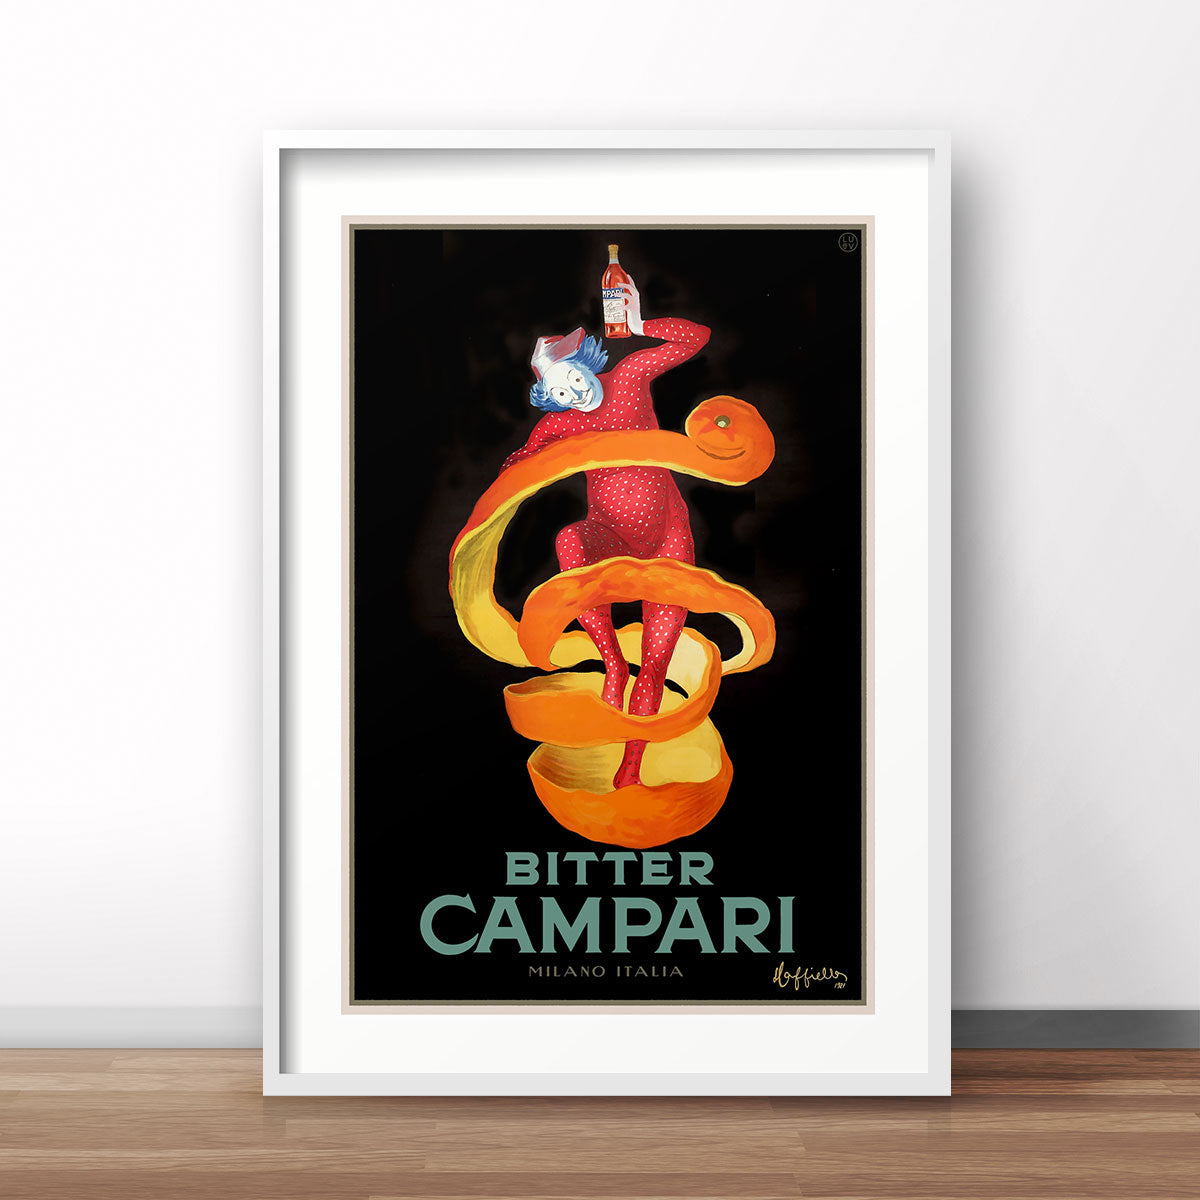 Campari retro advertising poster Italy Places We Luv